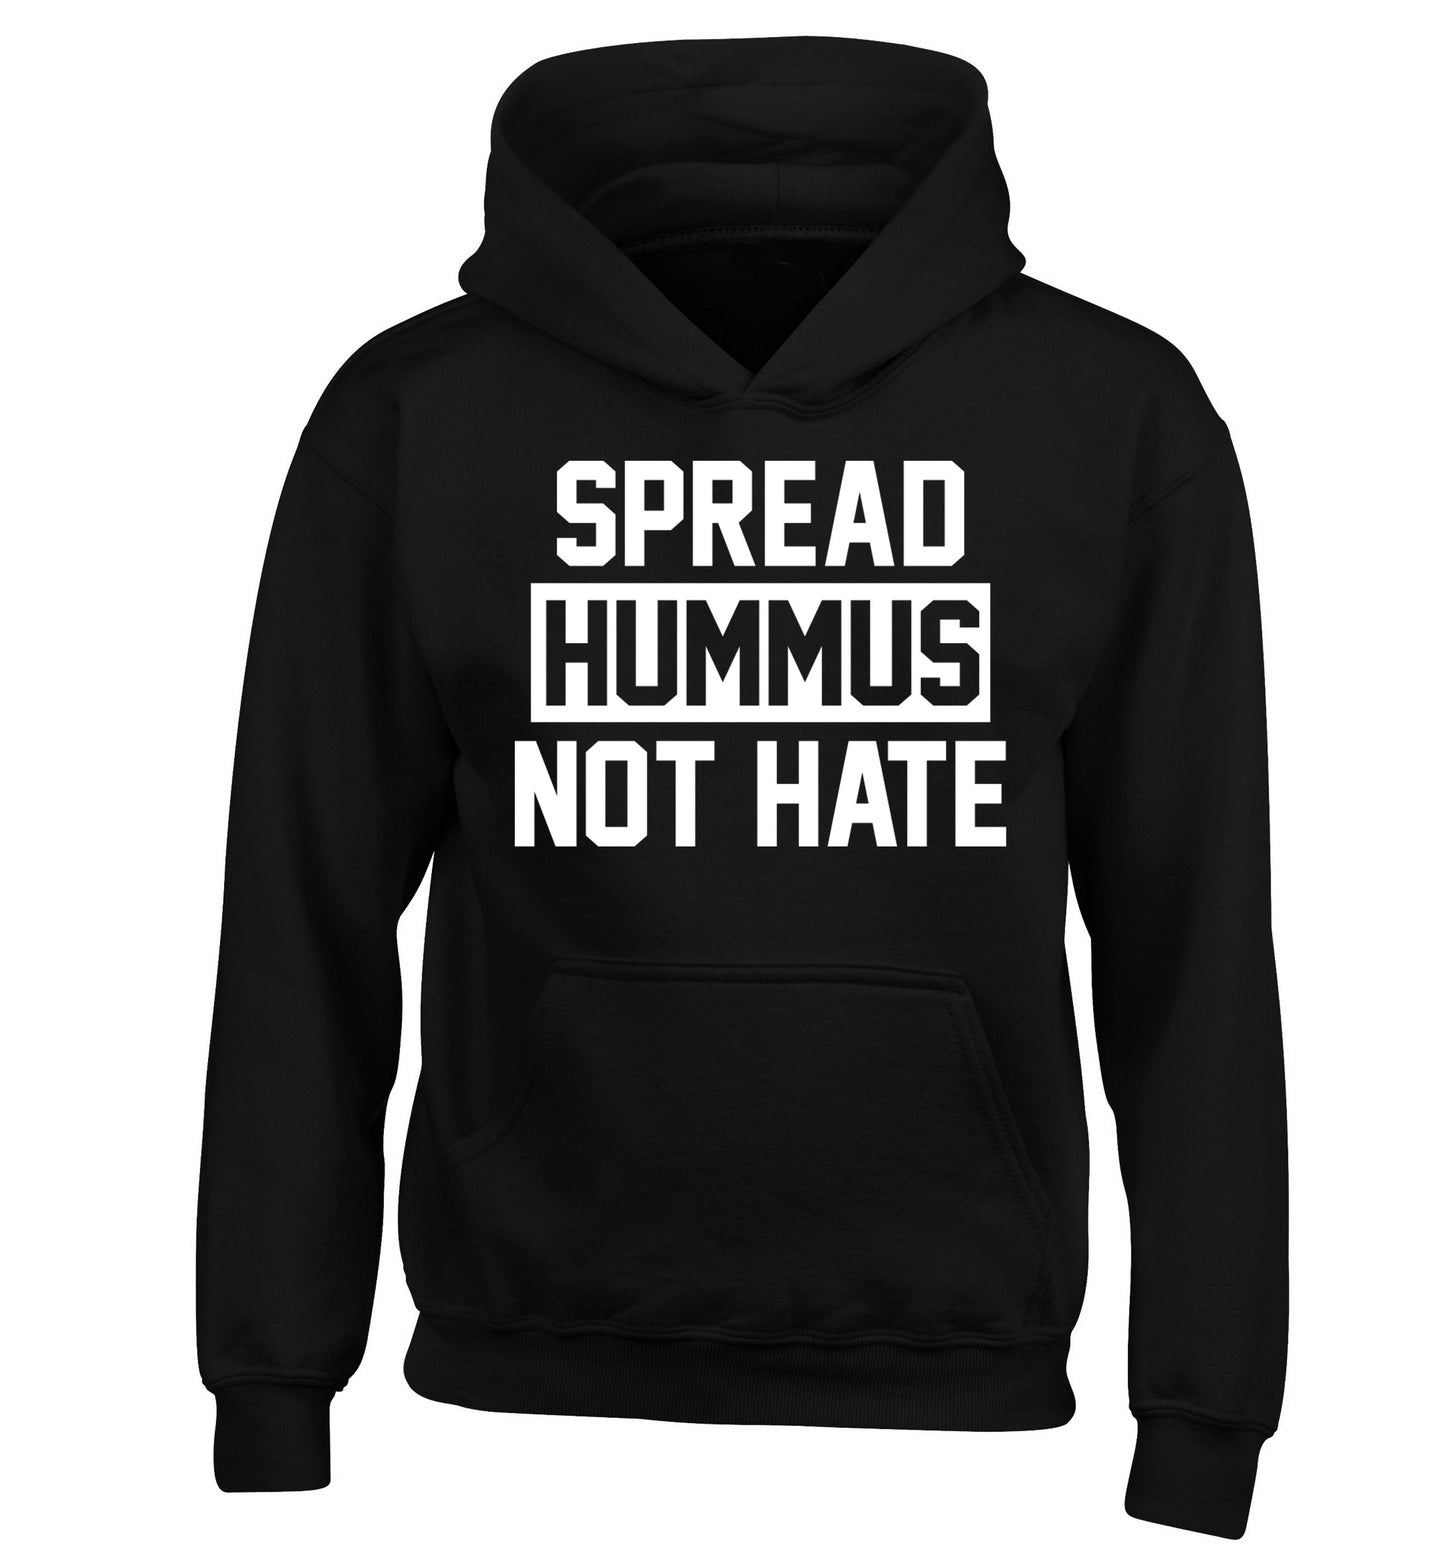 Spread hummus not hate children's black hoodie 12-14 Years